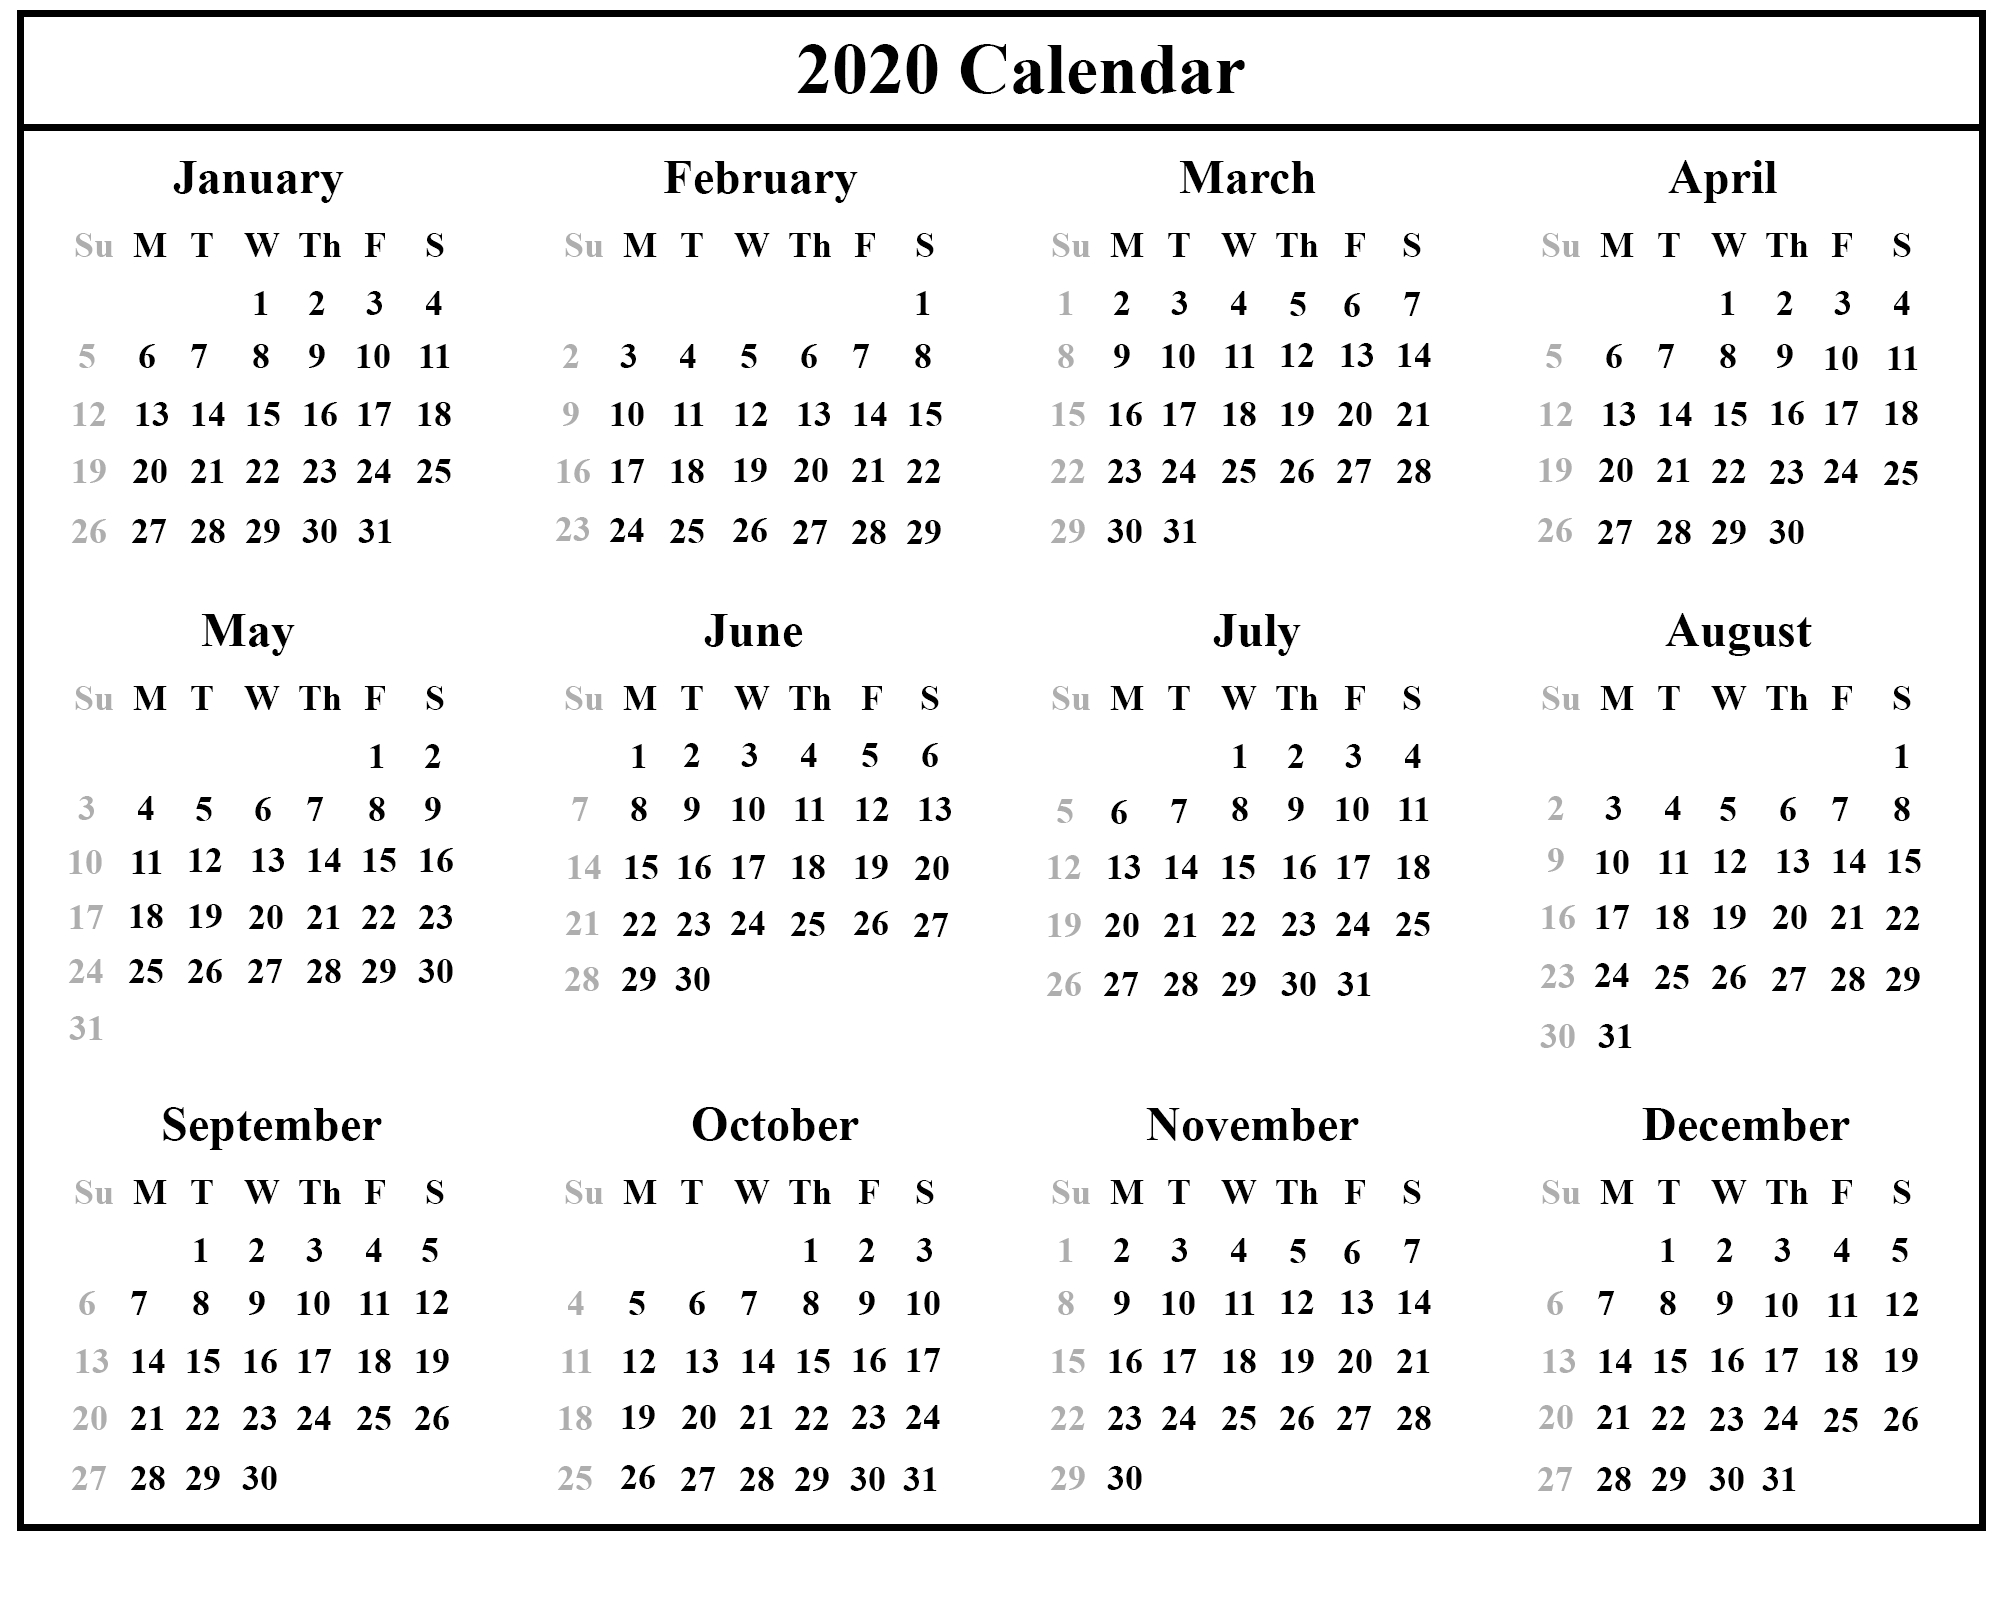 Printable Free Download Singapore Calendar 2020 [Pdf, Excel-Singapore 2020 Calendar With Holidays